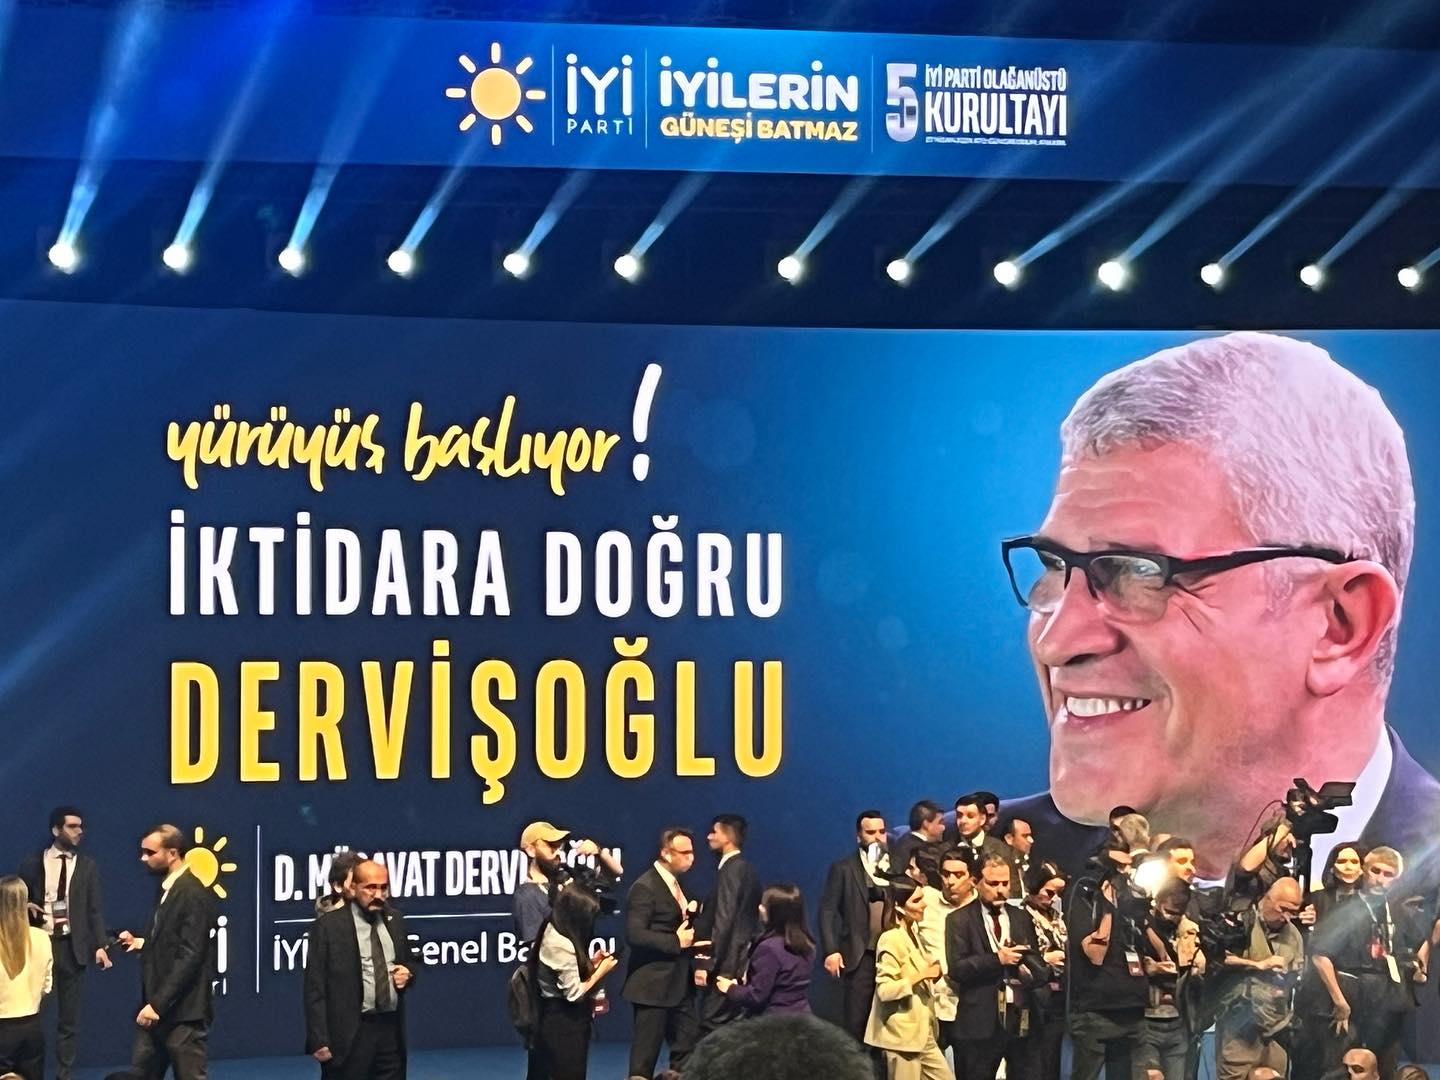 İYİ Parti'de Yeni Dönem: Müsavat Dervişoğlu Genel Başkan Oldu